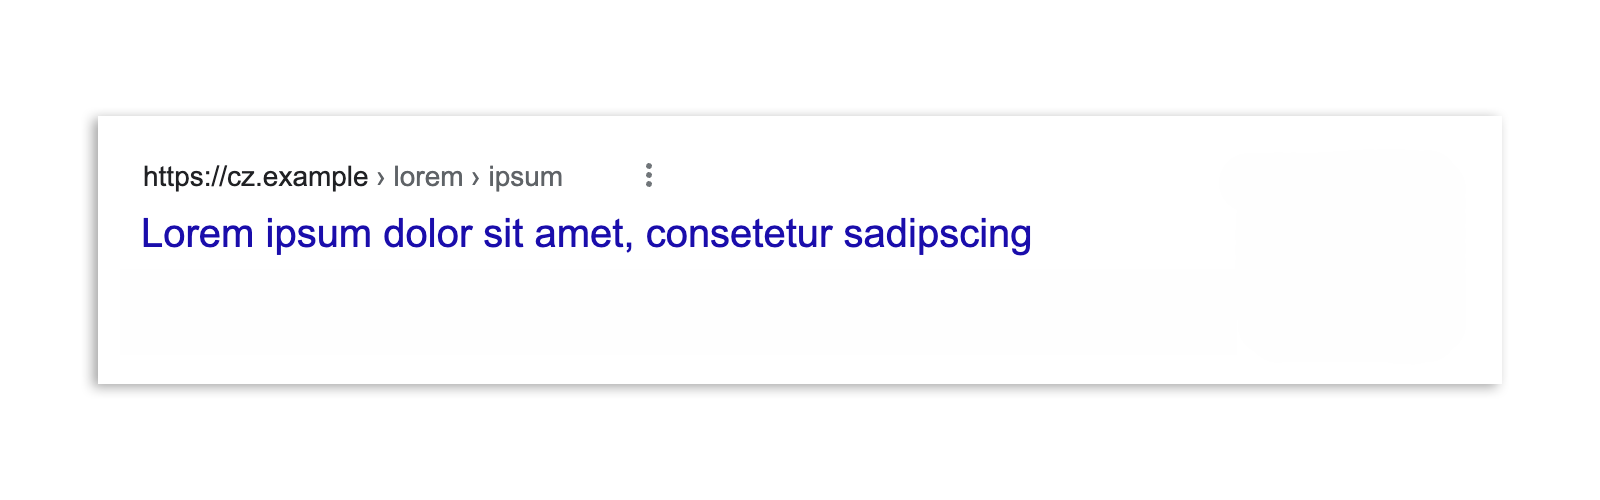 Ein Google-Suchergebnis in Tschechien nach der Verabschiedung des Gesetzes. Das Ergebnis umfasst nur die Schlagzeile des Artikels und die URL.